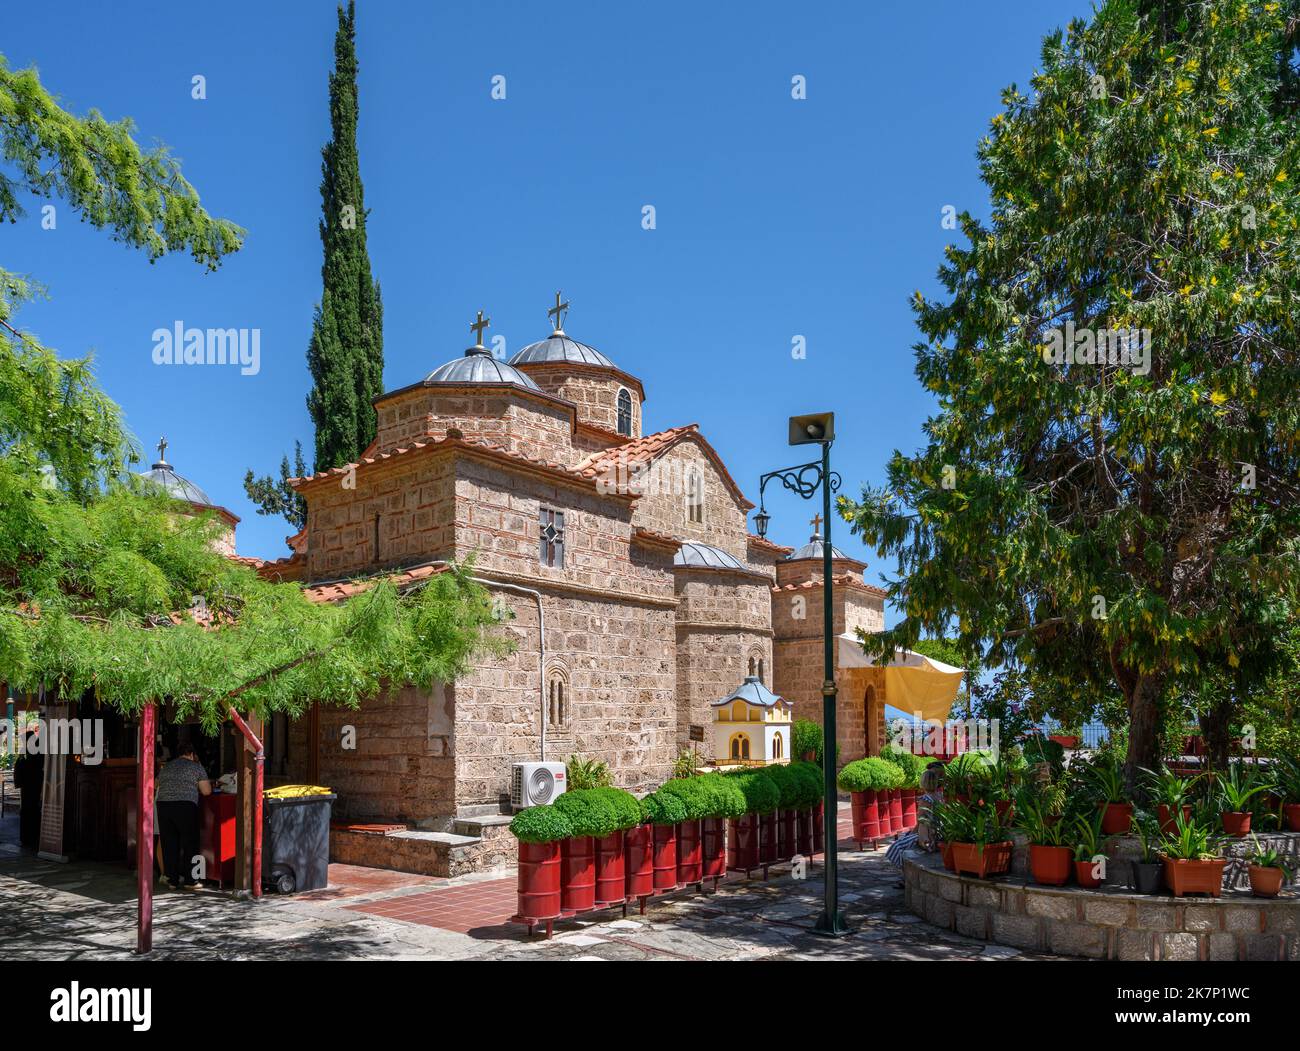 Das Kloster von Agathon (Agathonos), Iti Nationalpark, Zentralgriechenland, Griechenland Stockfoto